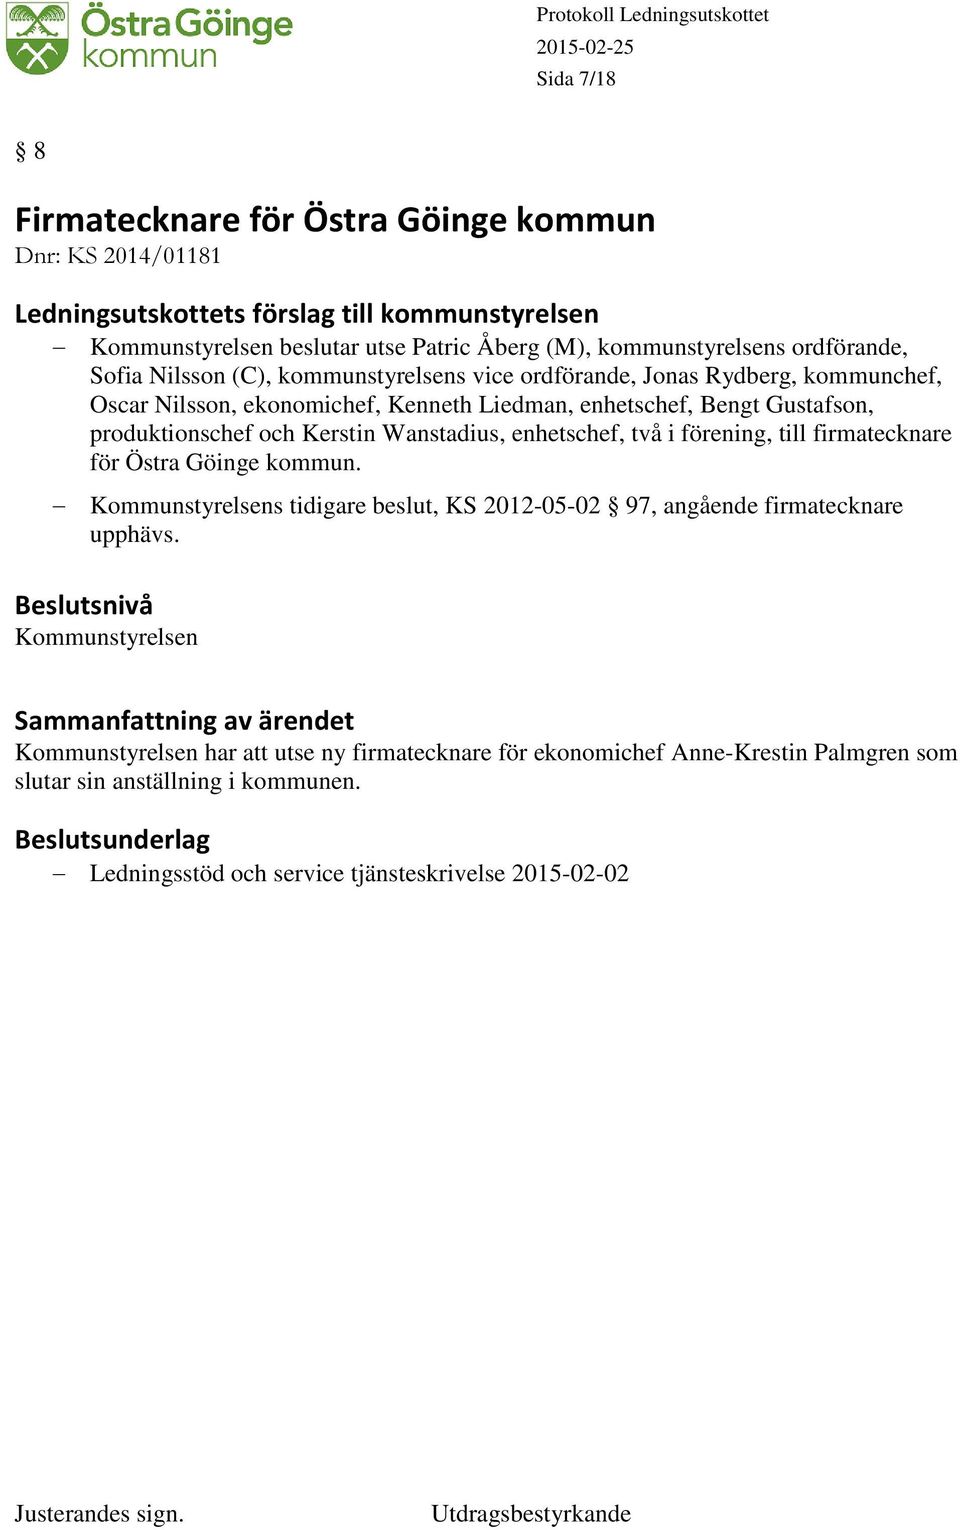 Wanstadius, enhetschef, två i förening, till firmatecknare för Östra Göinge kommun. Kommunstyrelsens tidigare beslut, KS 2012-05-02 97, angående firmatecknare upphävs.